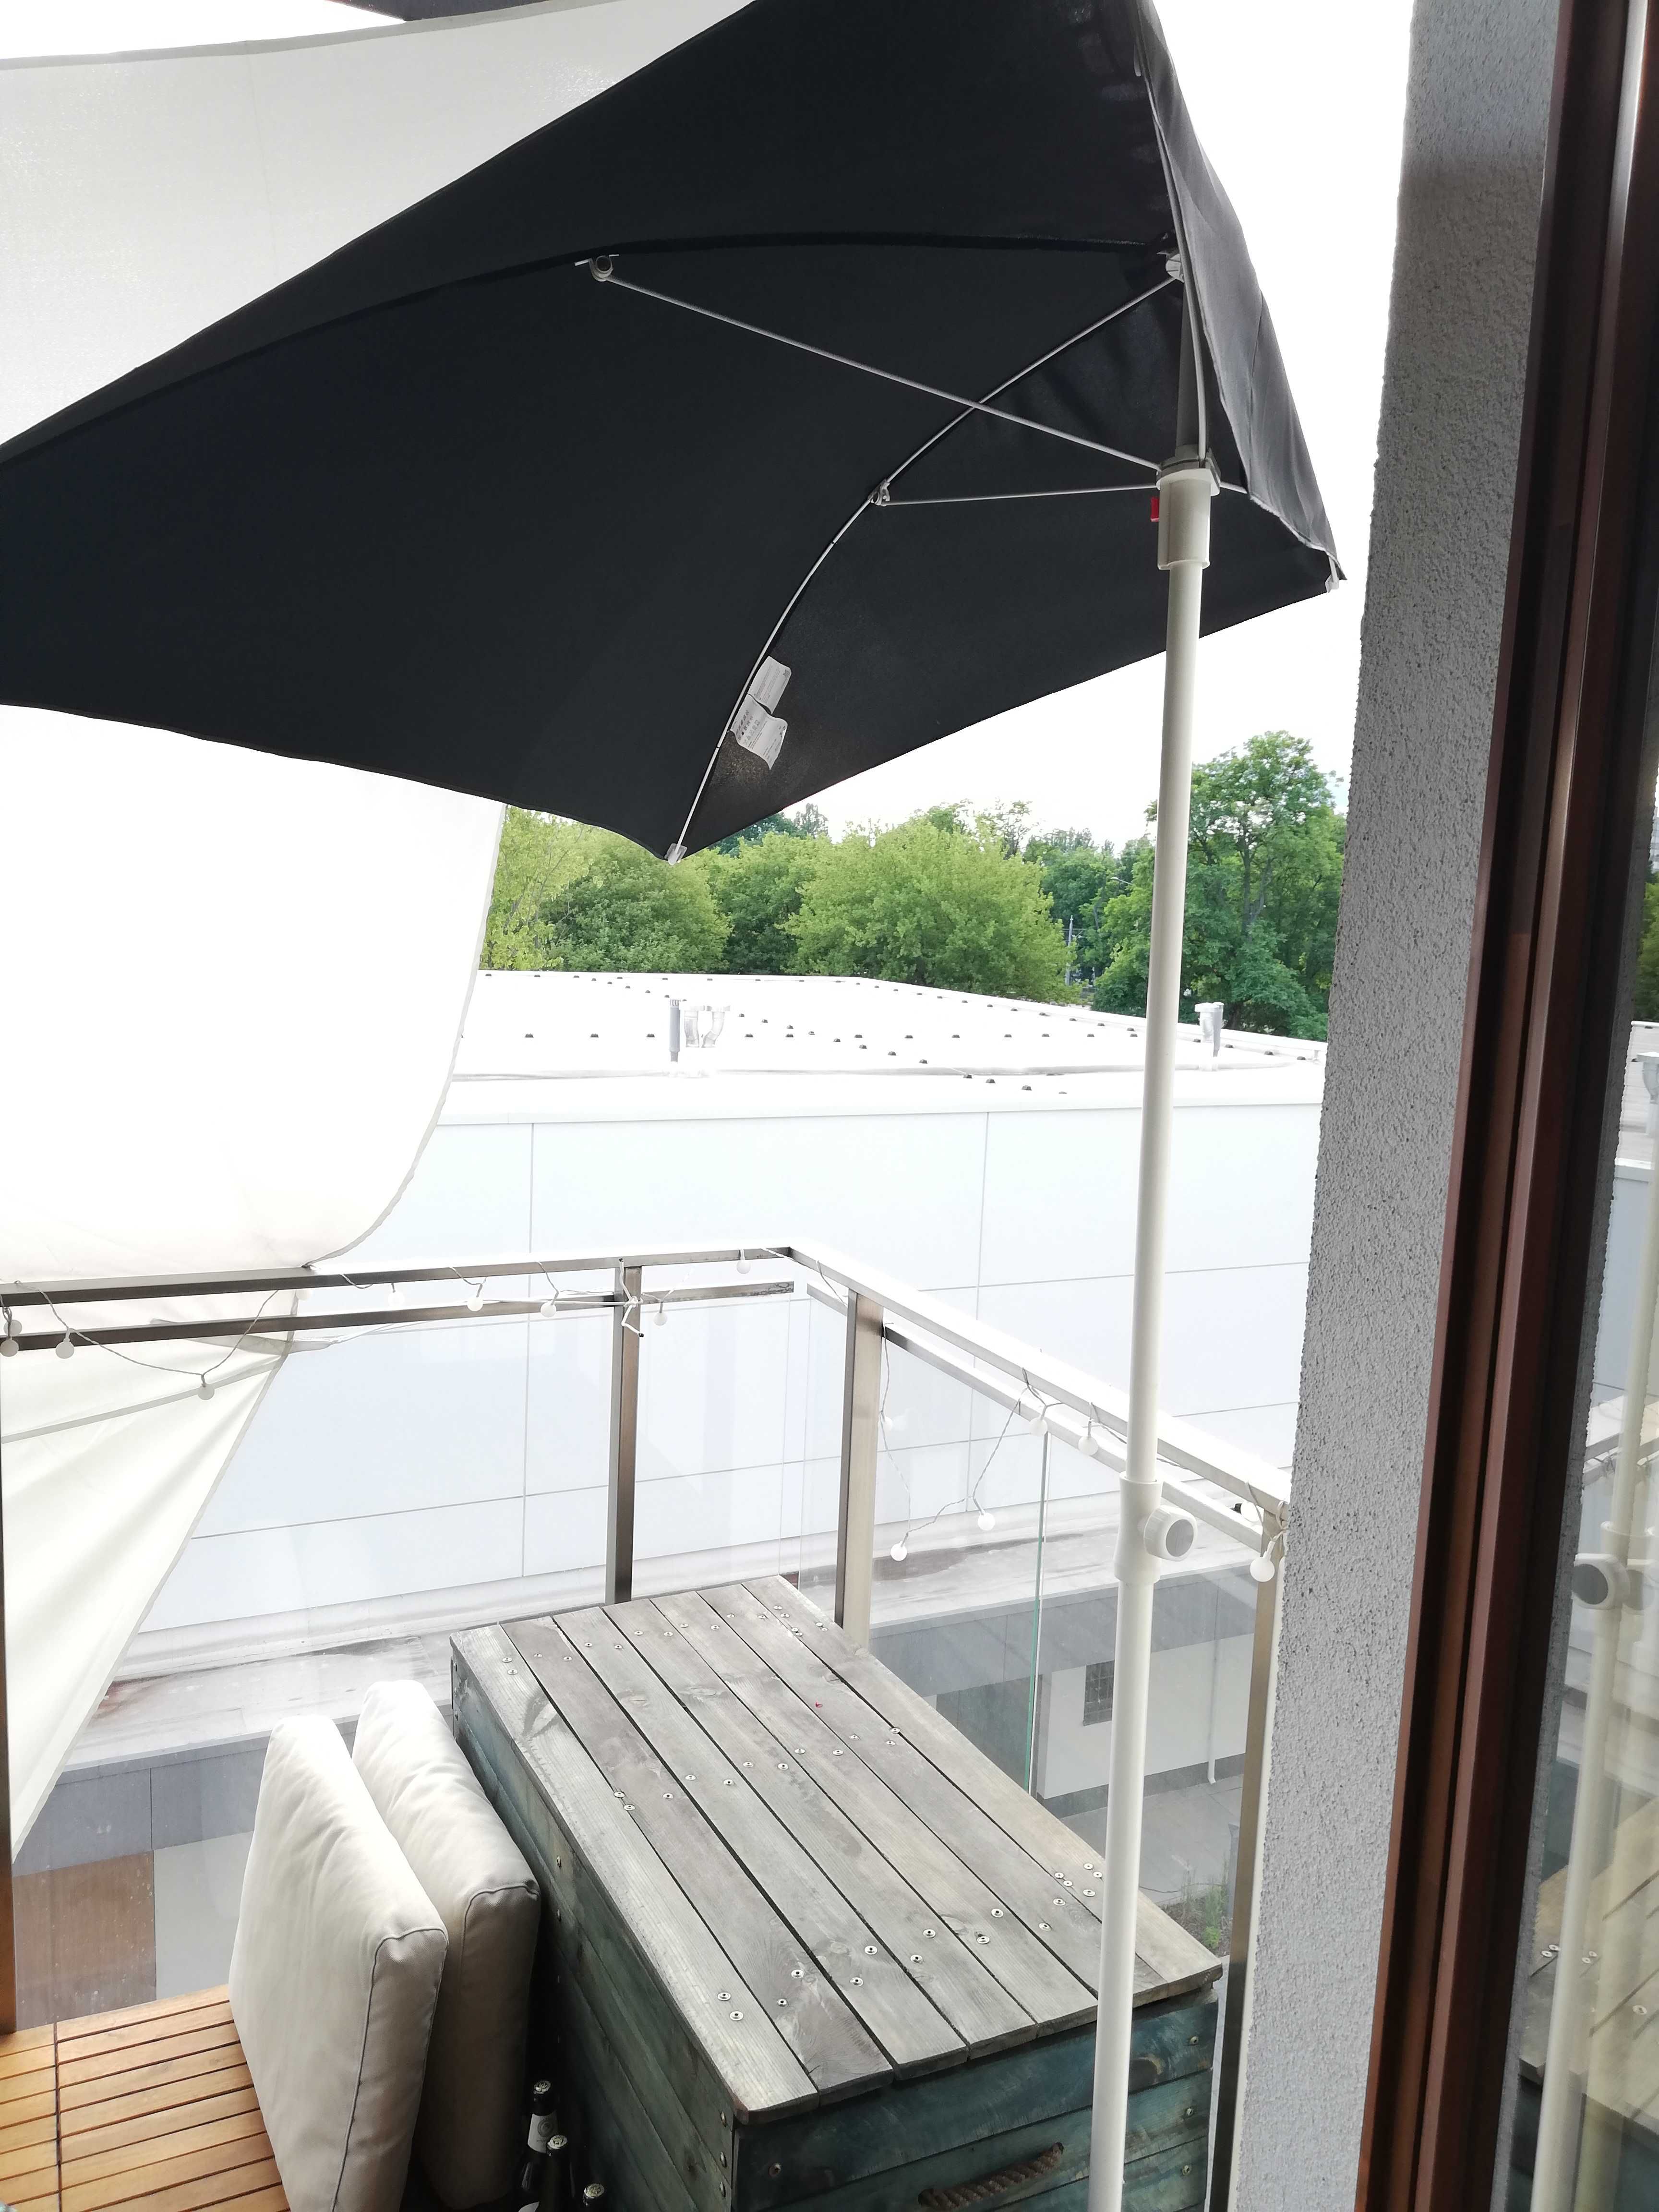 Aardewerk metro Stun Parasol przeciwsłoneczny z IKEA, balkon, FLISO, Bdb, podstawa BRAMSÖN  Warszawa Wola • OLX.pl